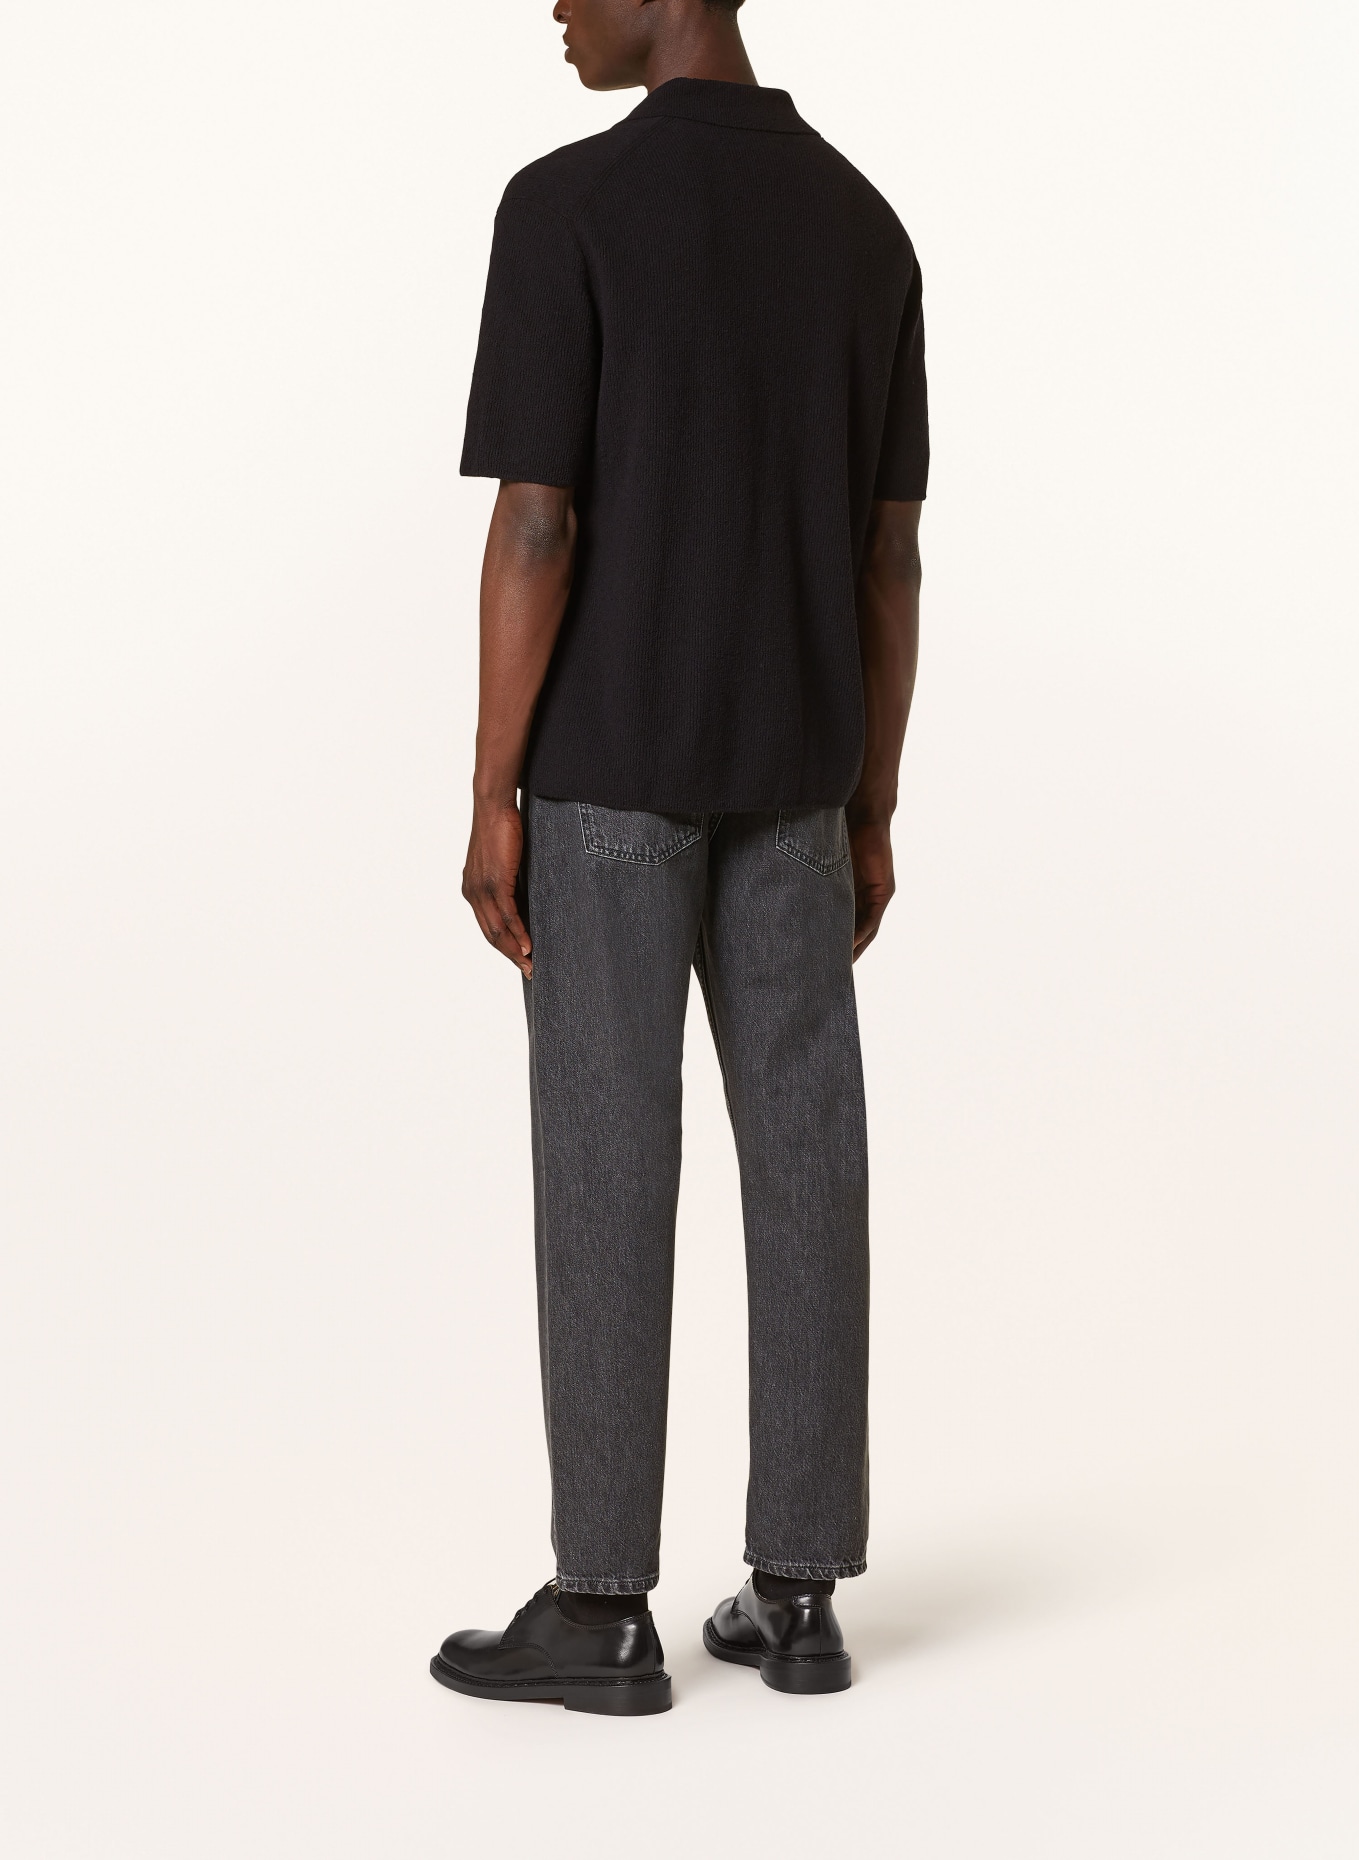 COS Knit shirt regular fit, Color: BLACK (Image 3)